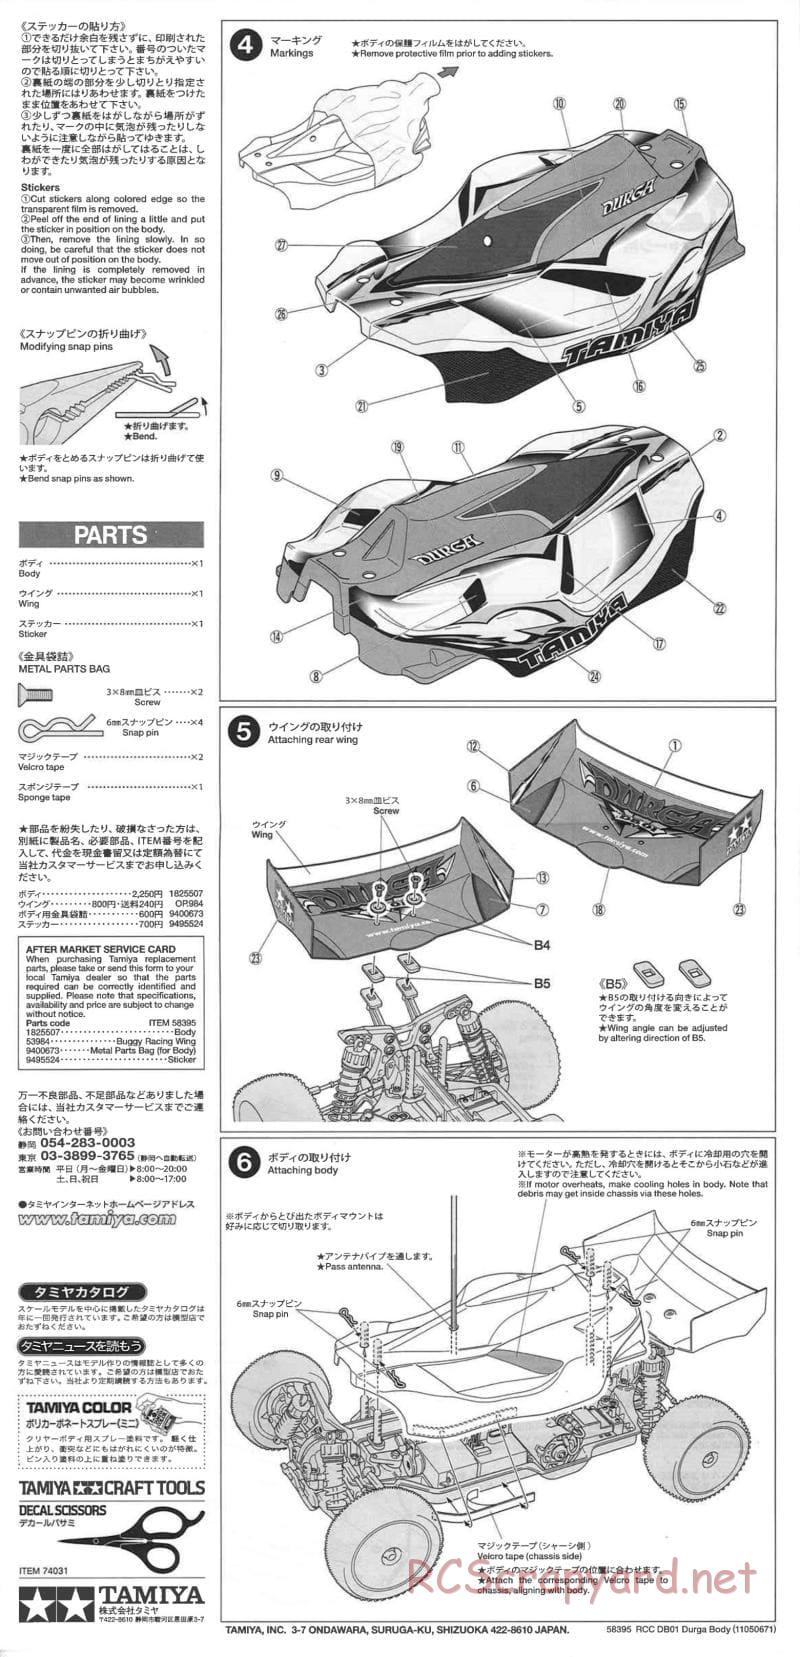 Tamiya - Durga - DB-01 Chassis - Body Manual - Page 2